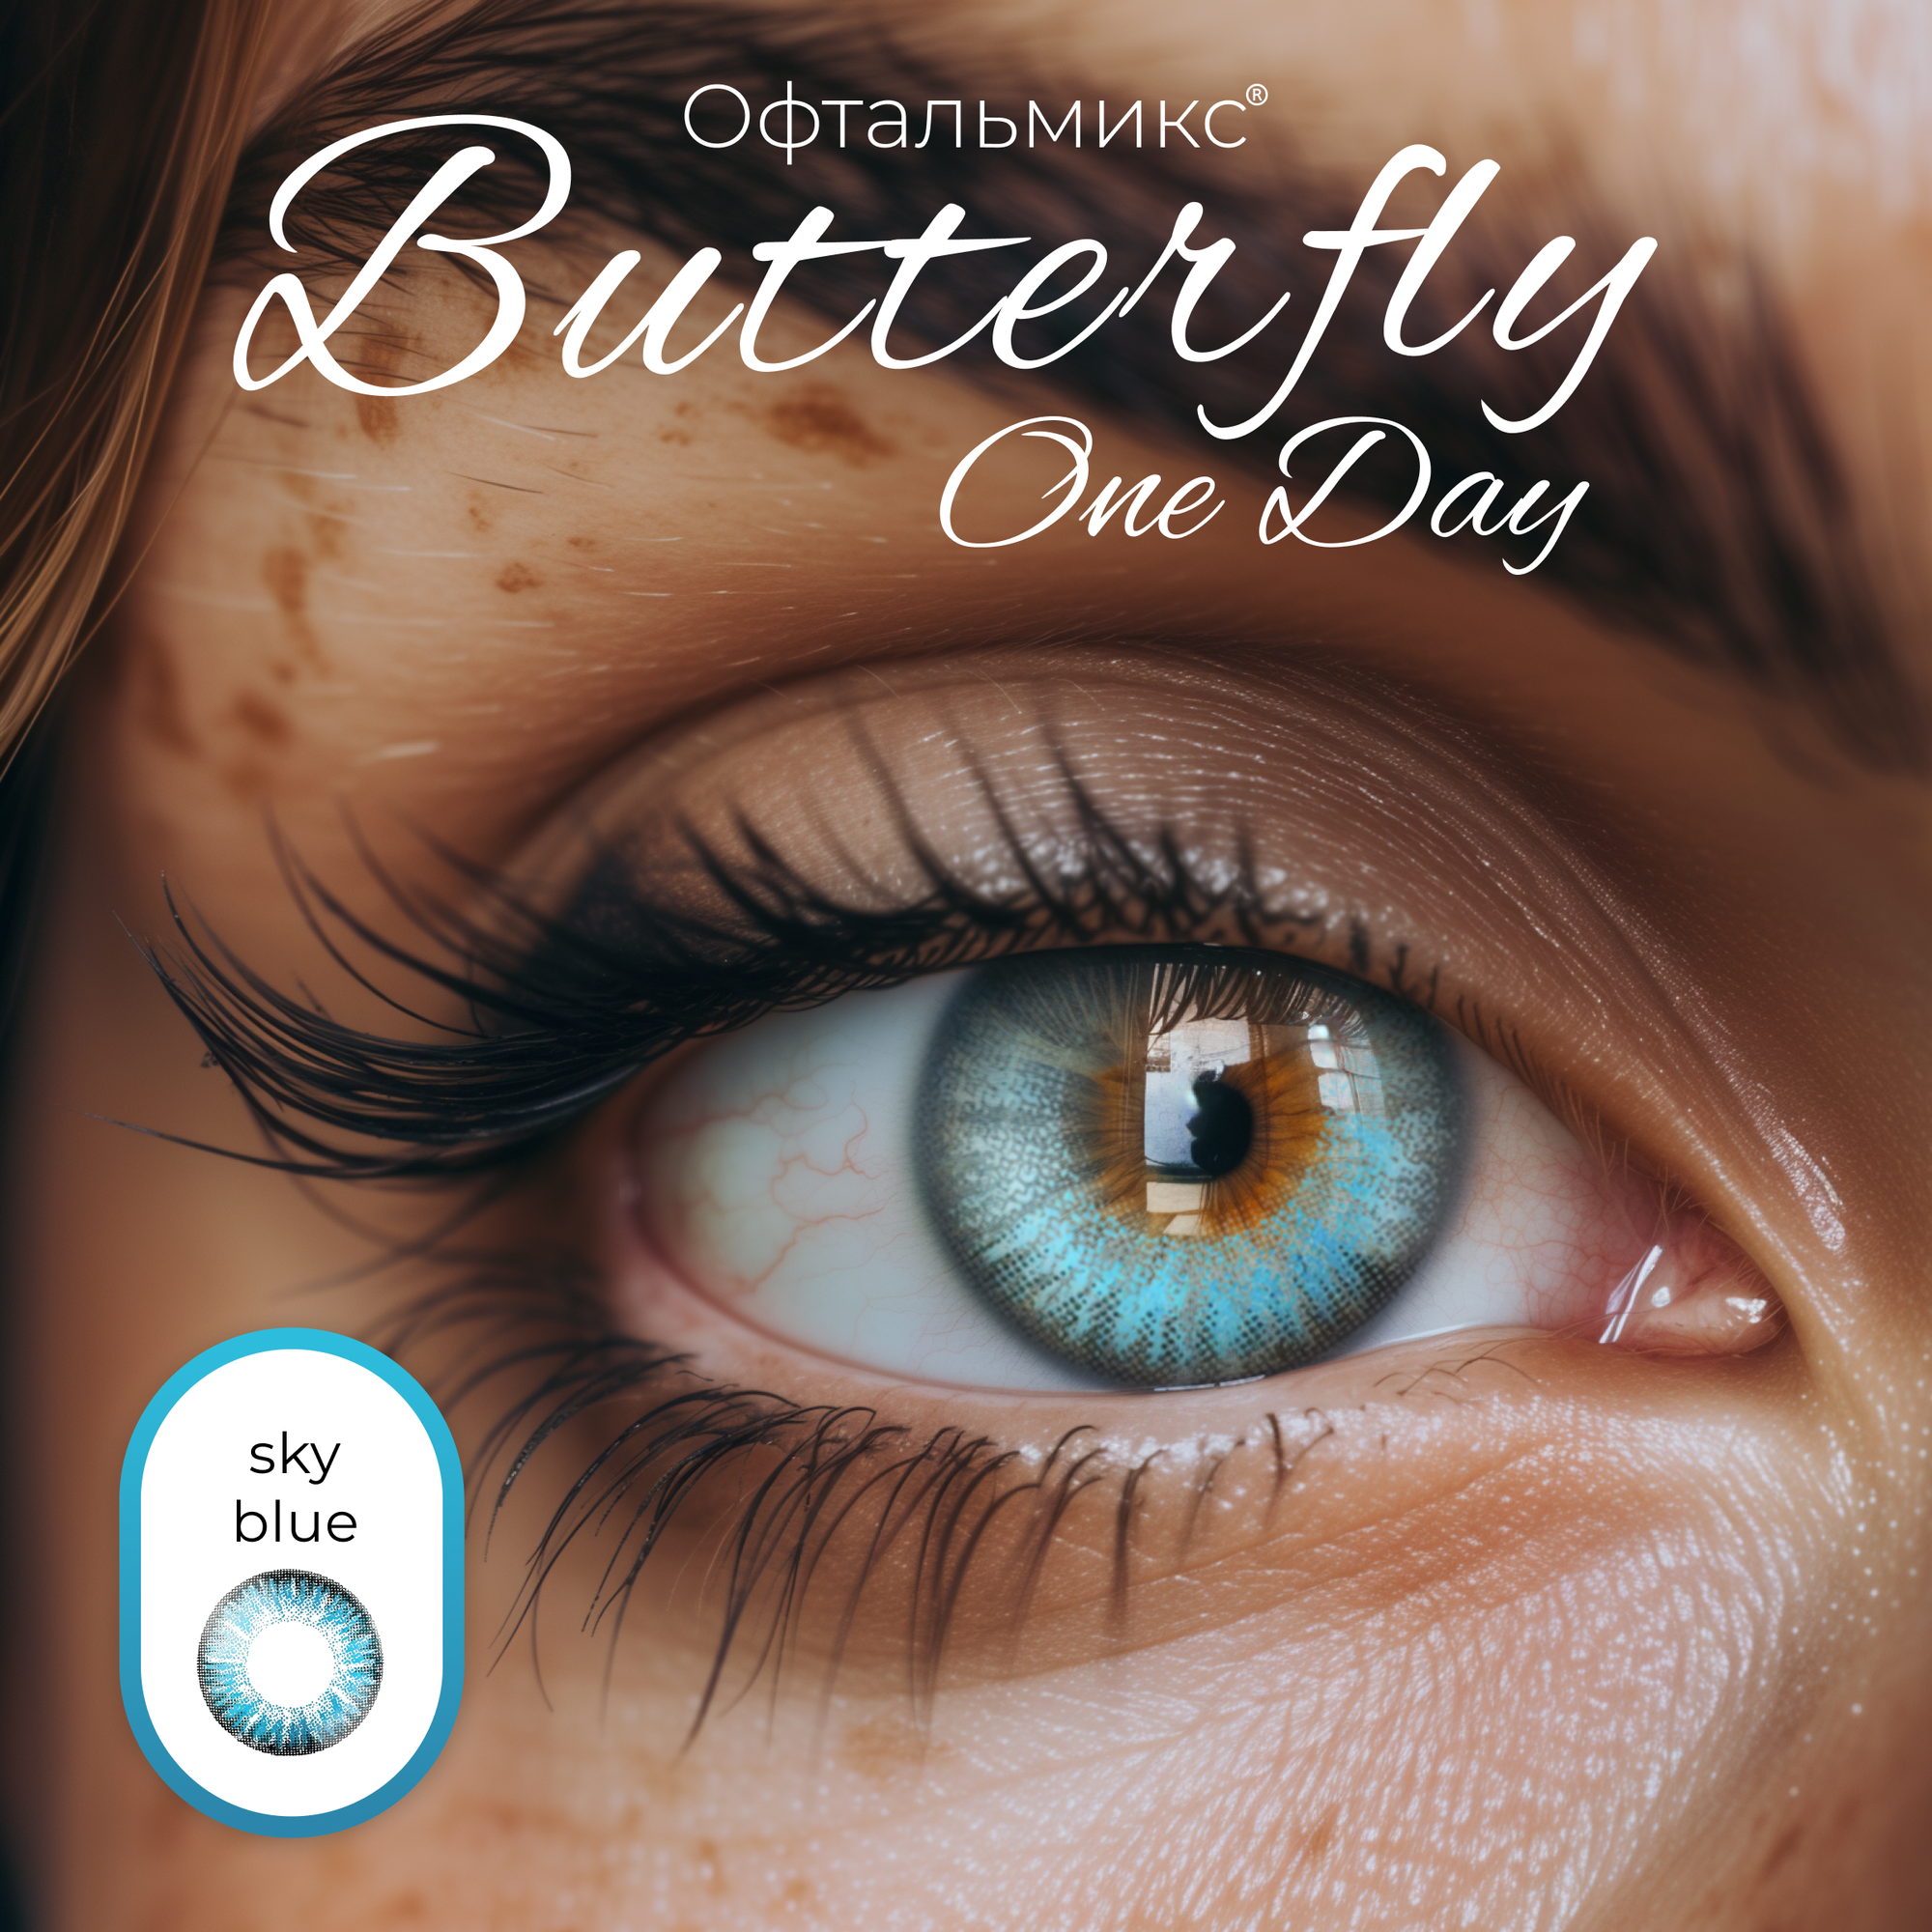 Цветные контактные линзы Офтальмикс Butterfly One Day (2 линзы) -1.00 R 8.6 Sky Blue (Голубой)